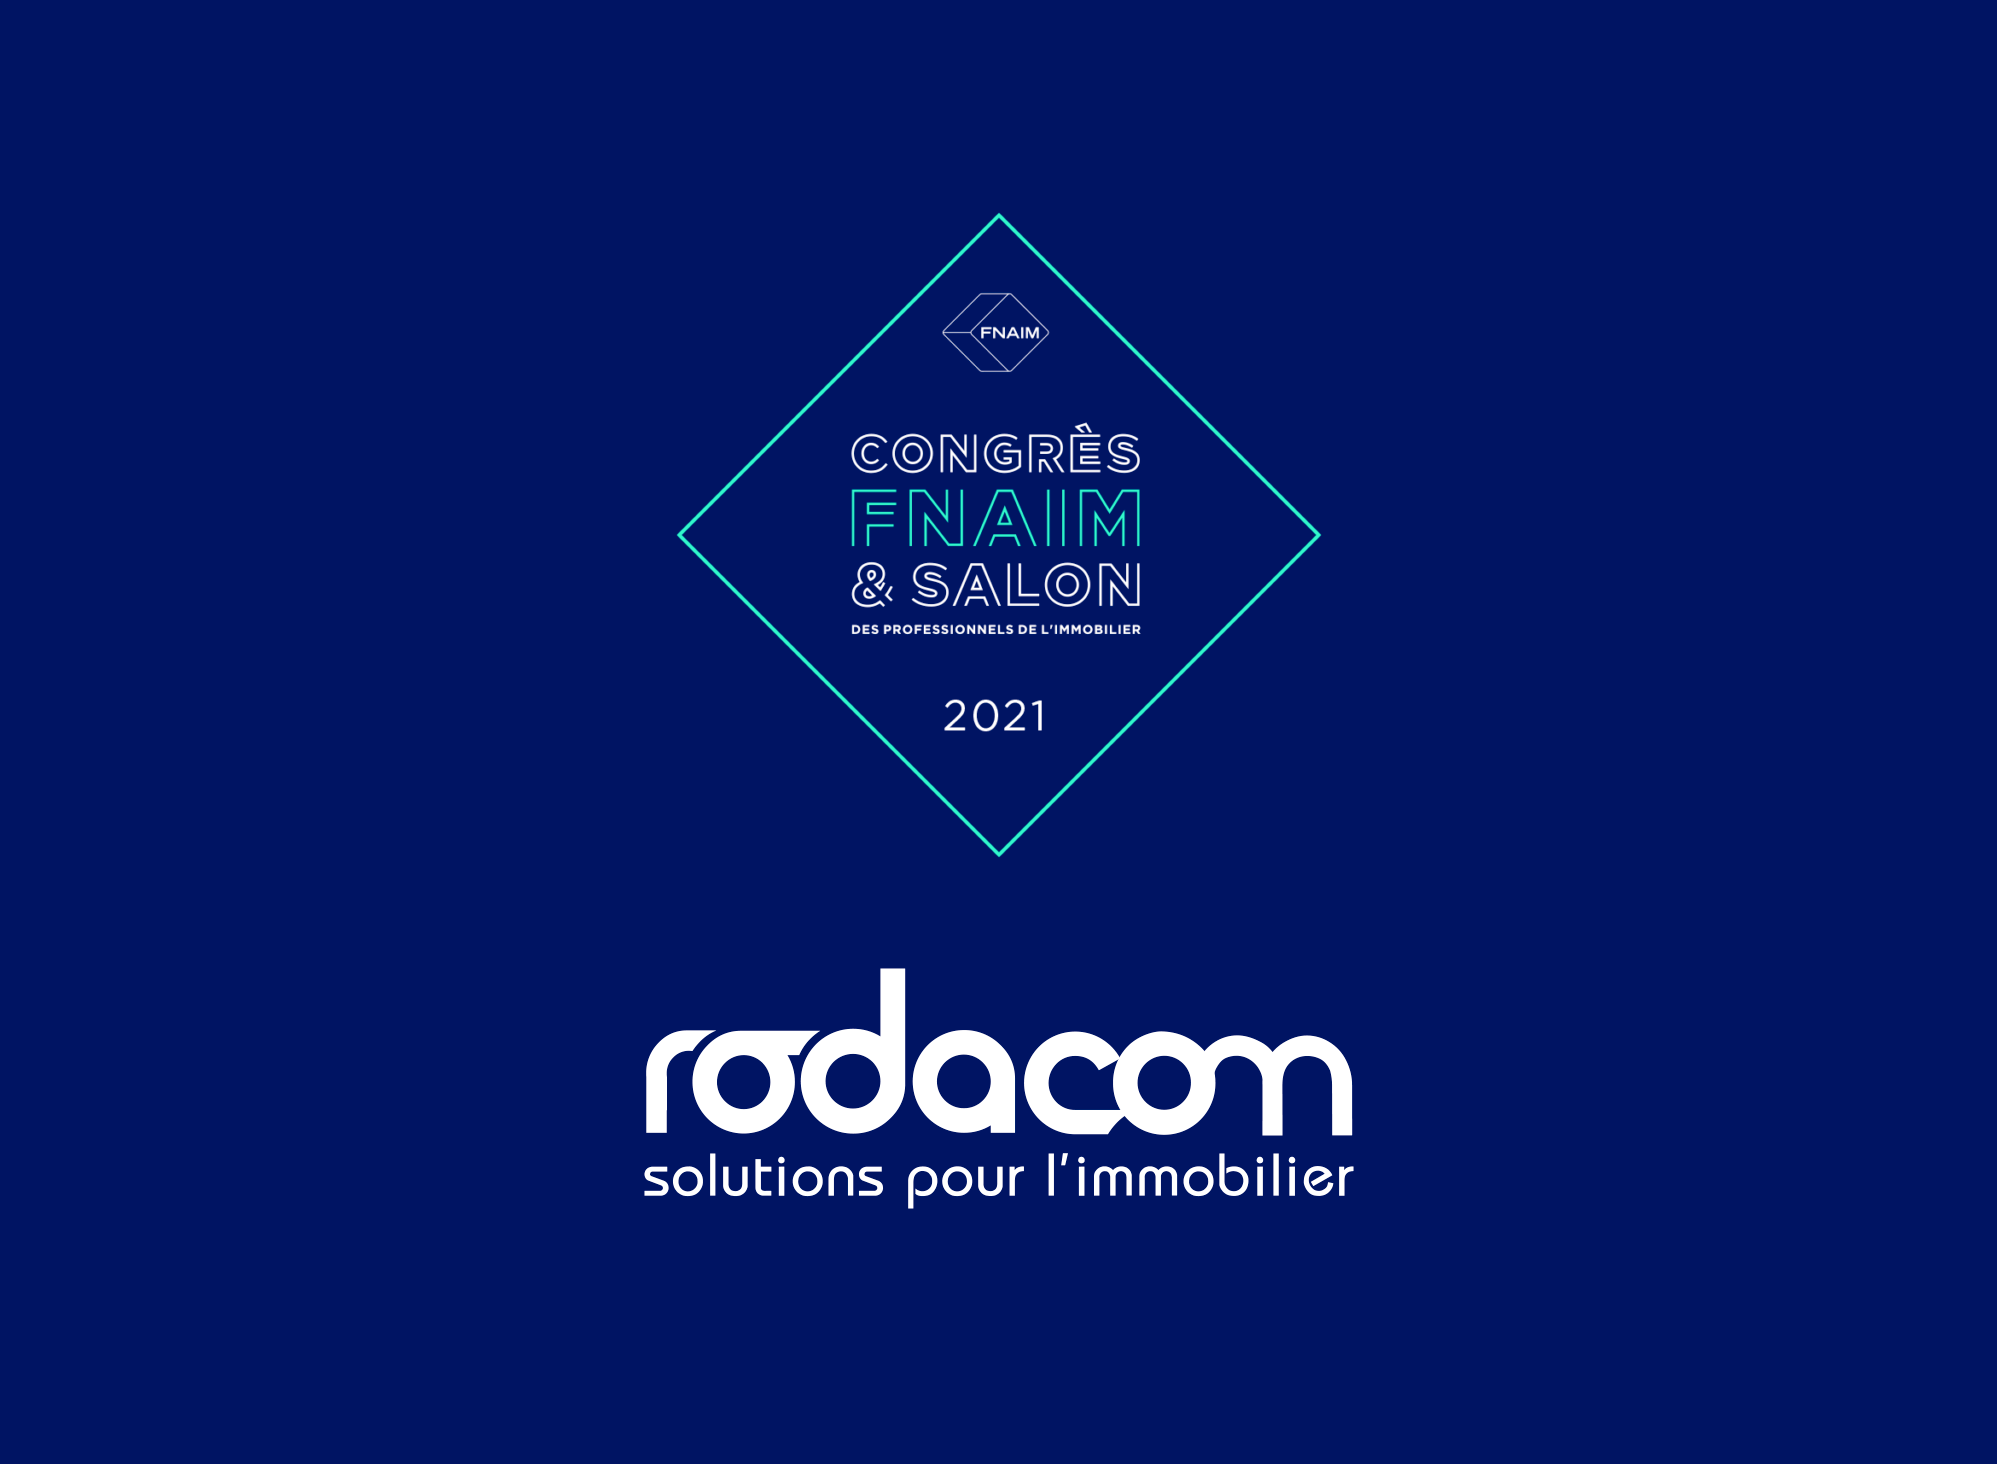 FNAIM 2021 - Rodacom - logiciel immobilier